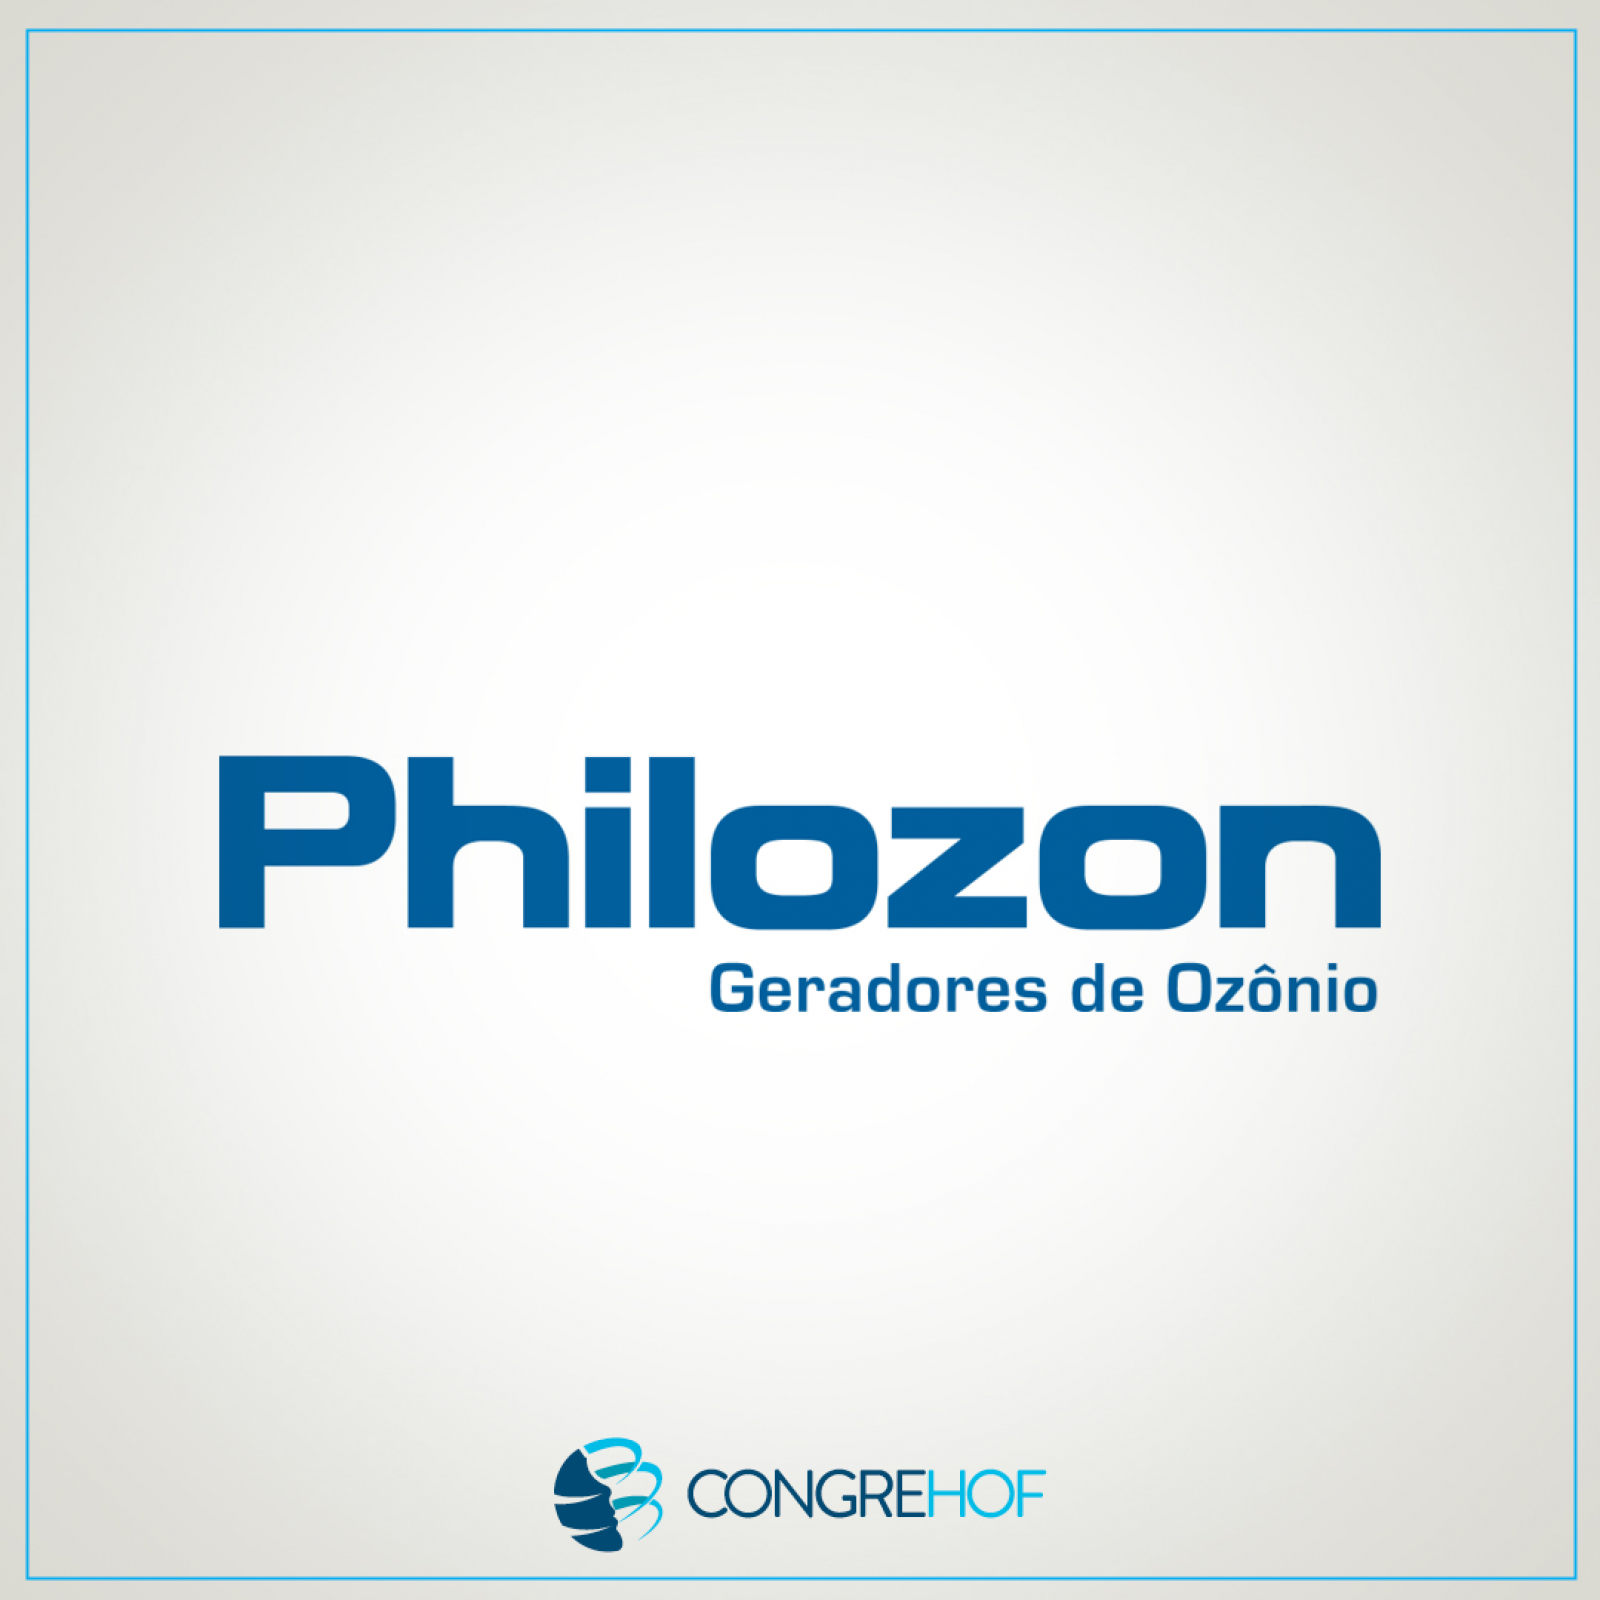 PHILOZON  - Equipamentos geradores de ozônio